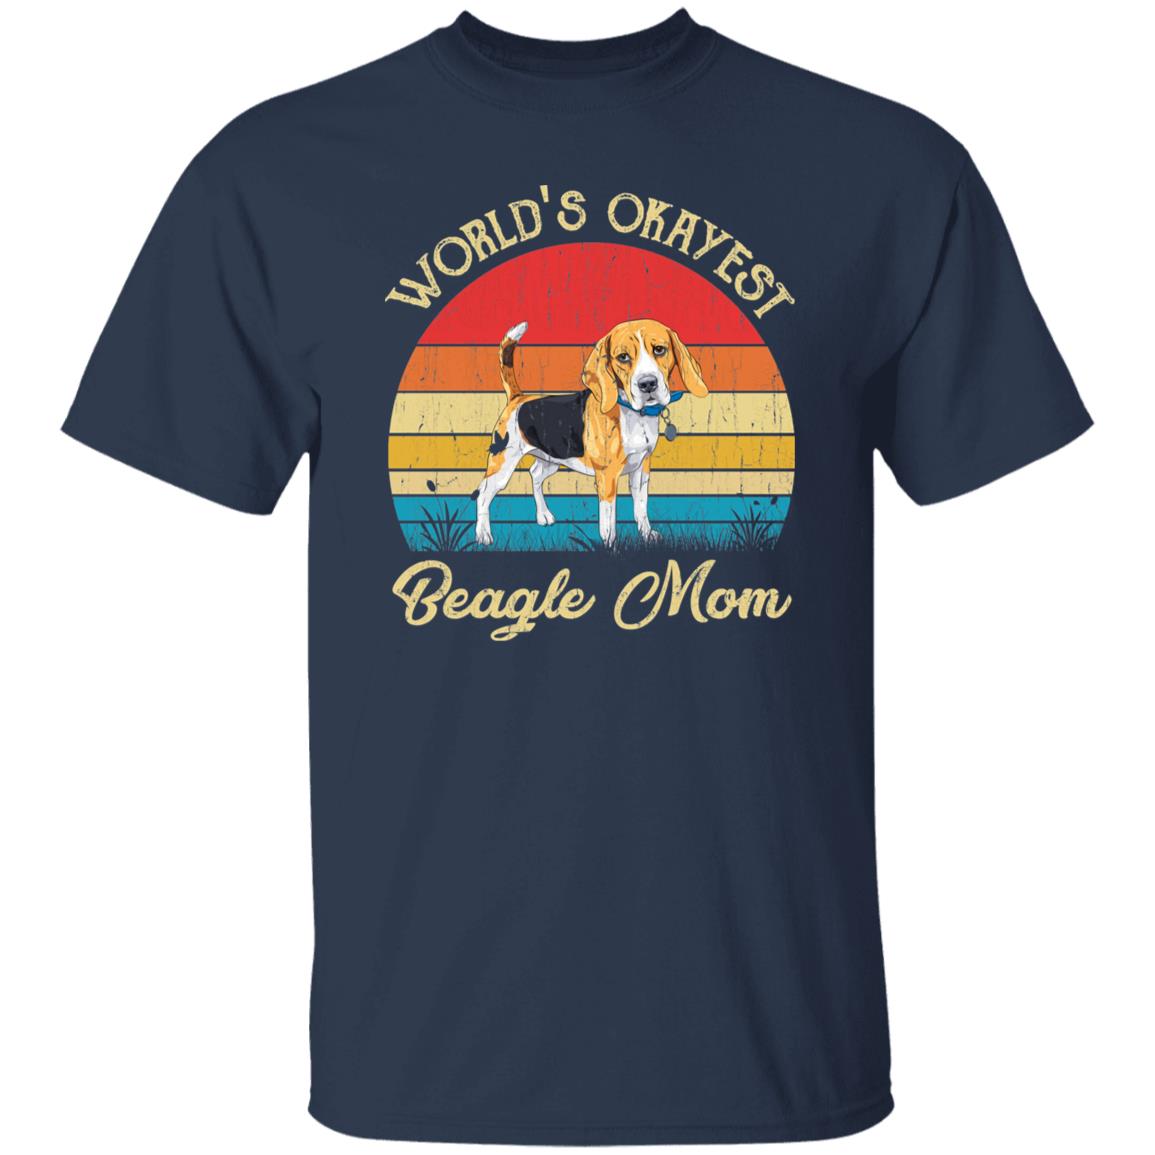 World's Okayest Beagle mom Retro Style Unisex T-shirt Black Navy Dark Heather-Navy-Family-Gift-Planet